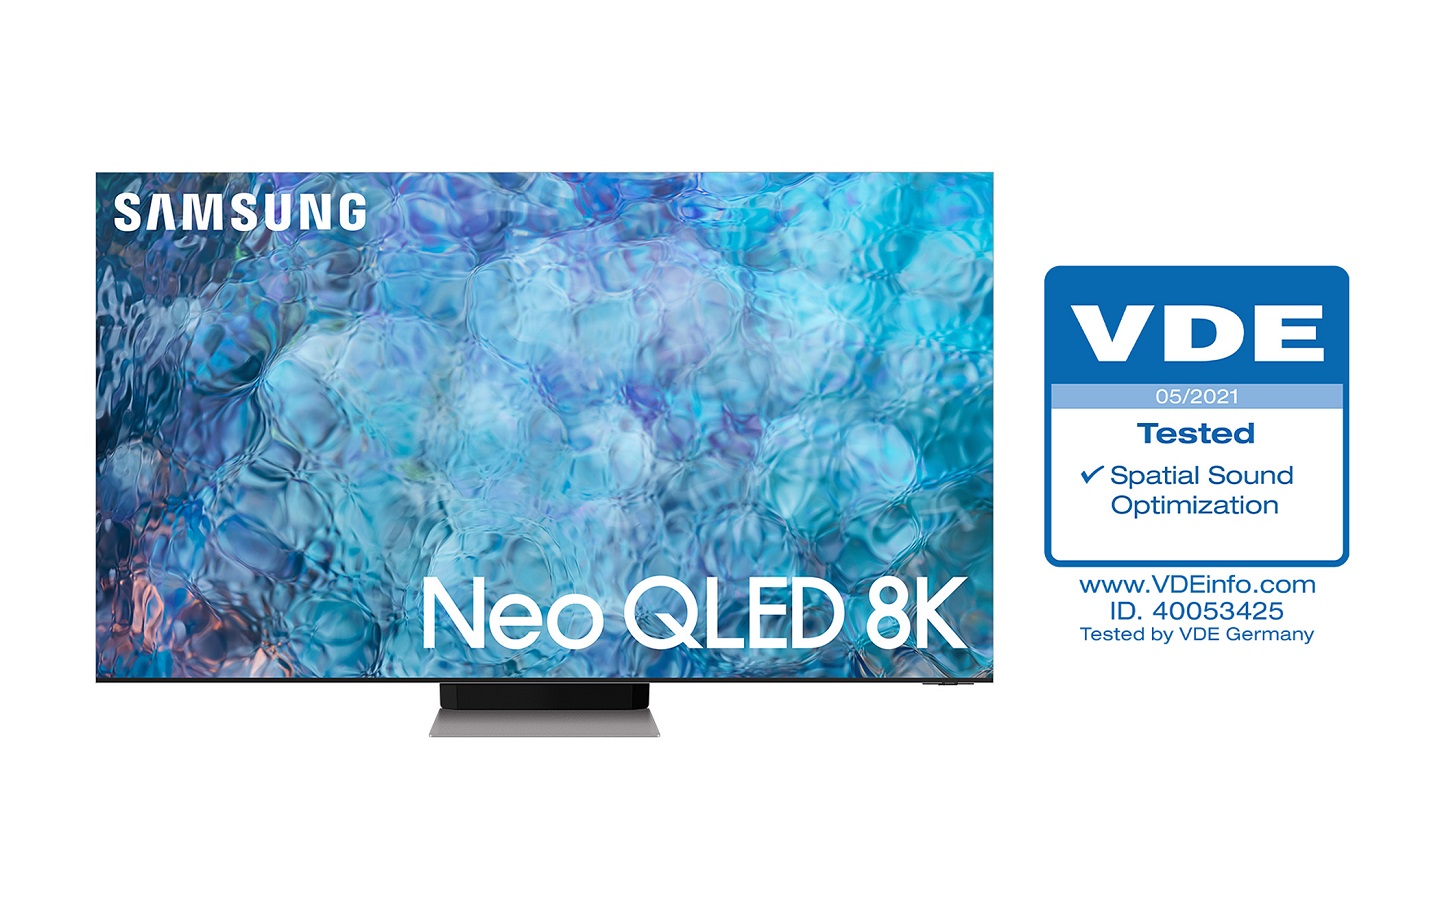 Телевизоры Samsung Neo QLED получили сертификат VDE «Оптимизация пространственного звука»